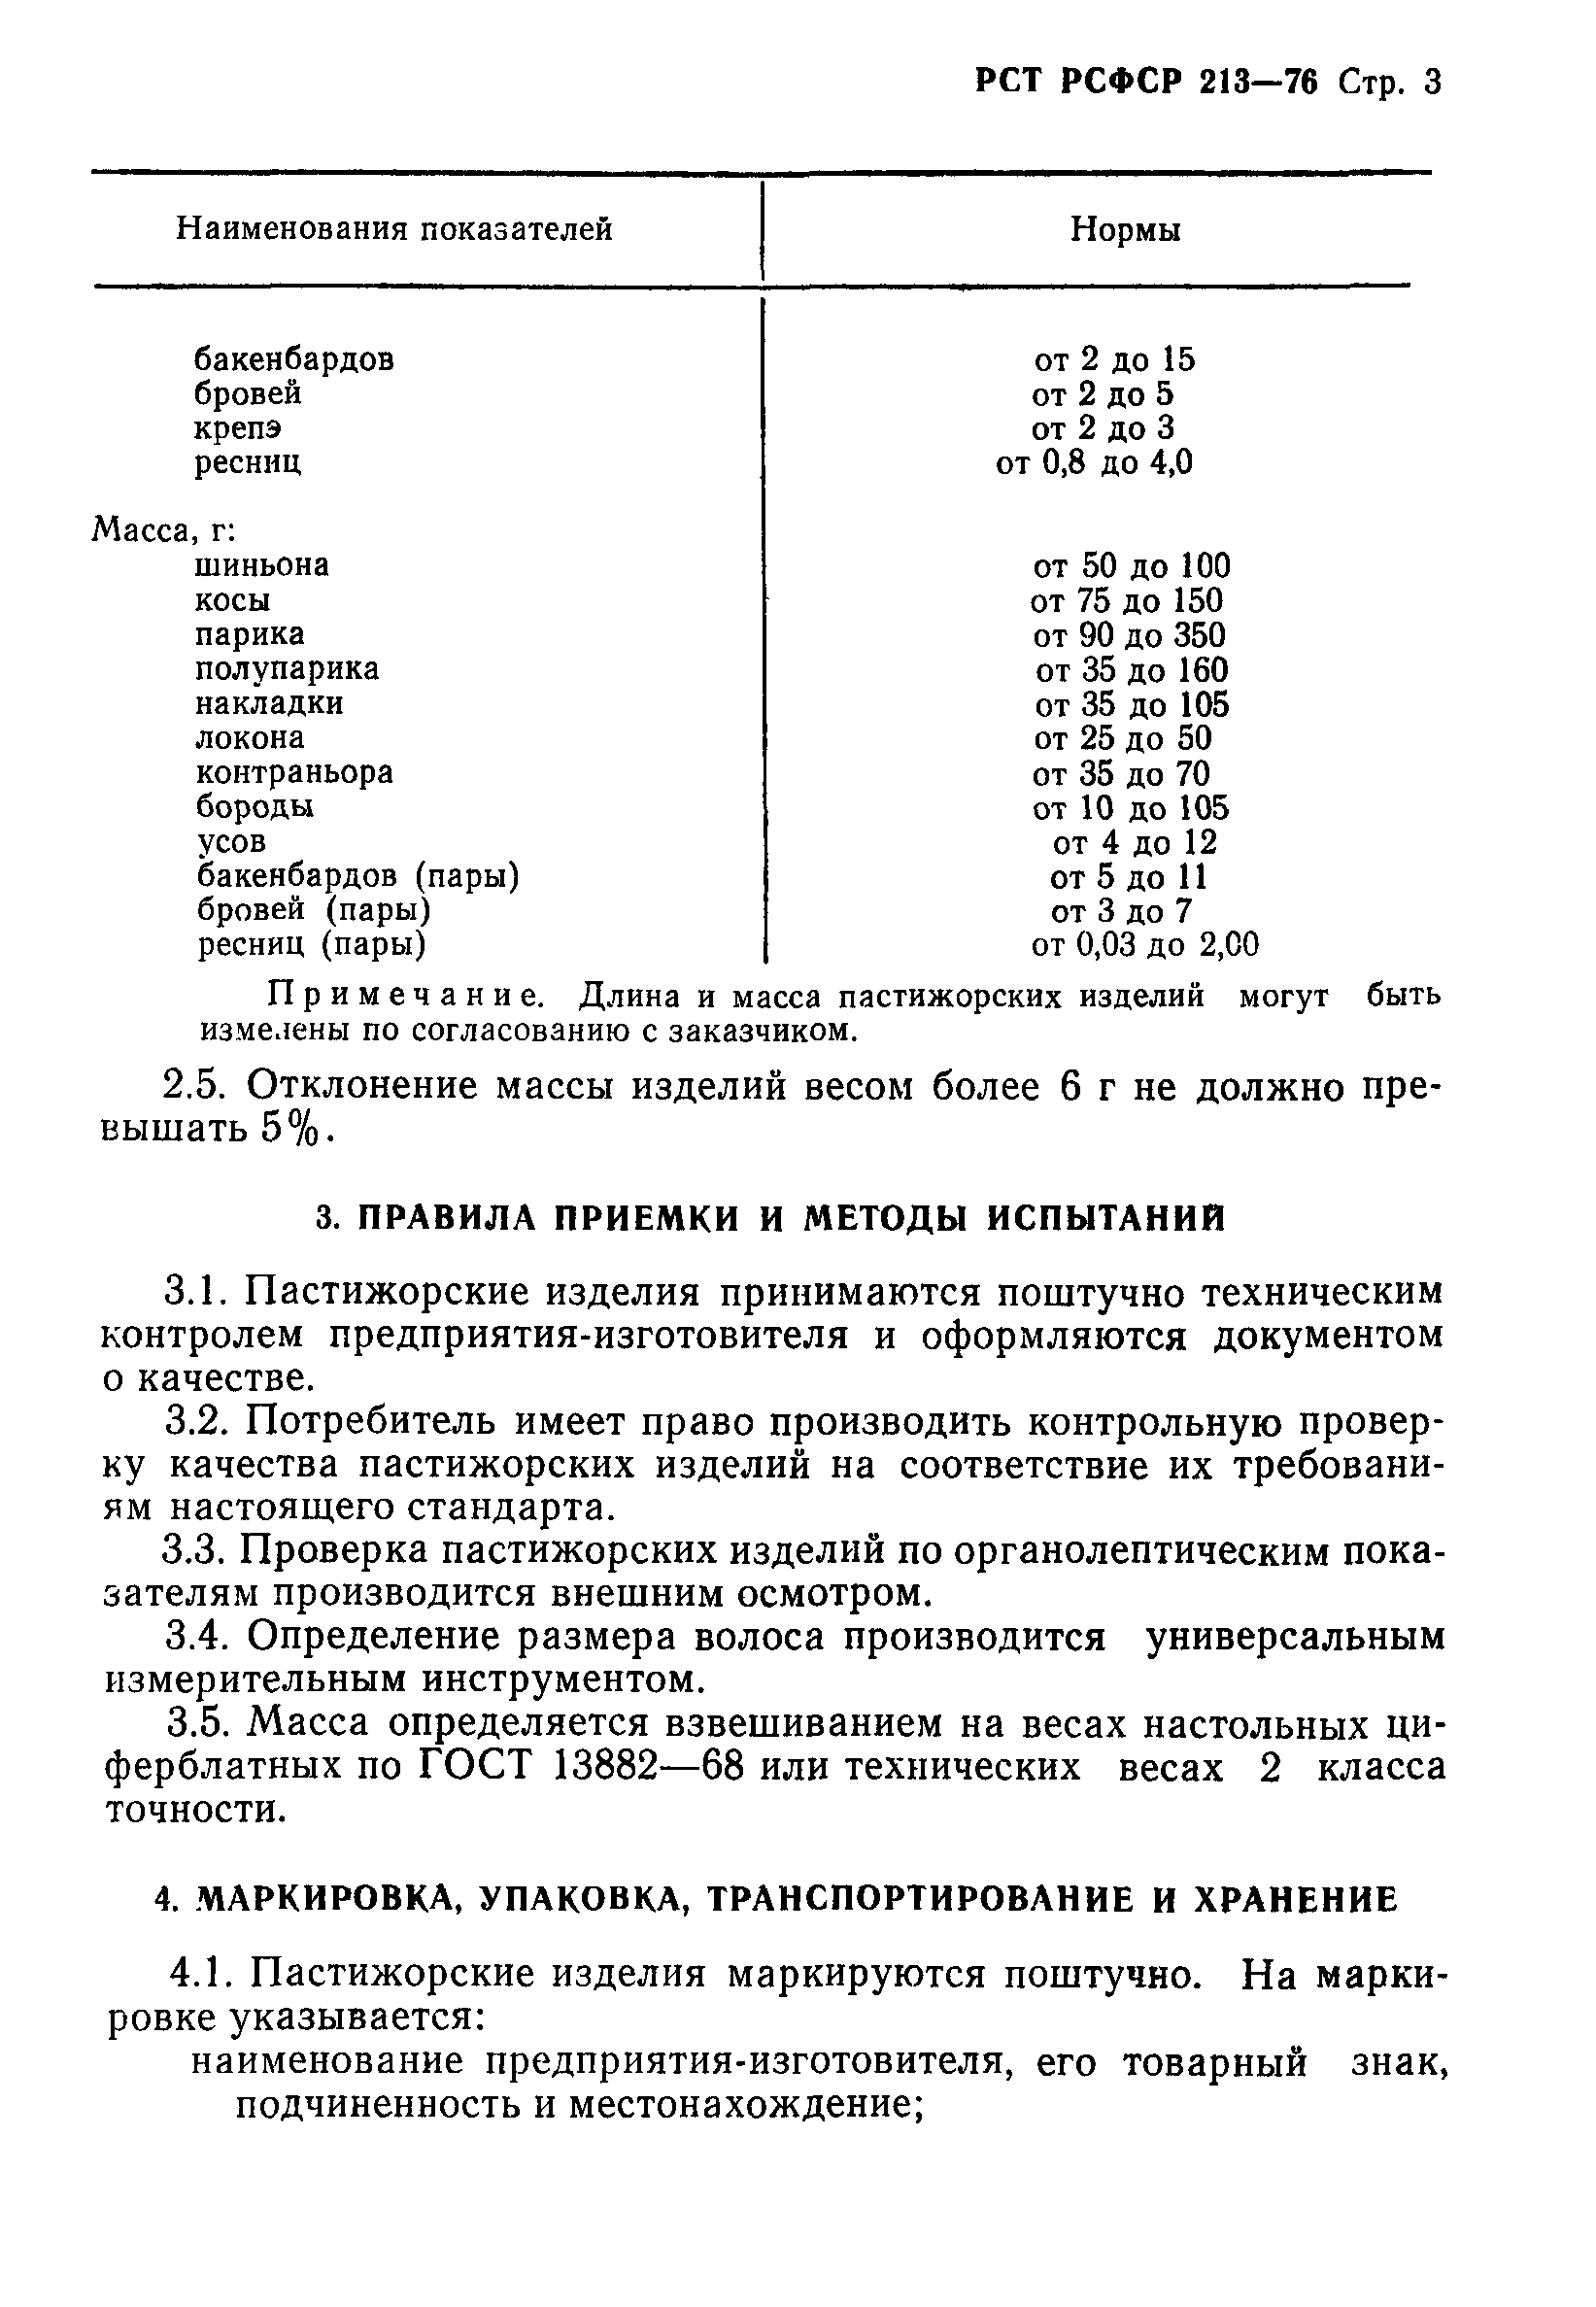 РСТ РСФСР 213-76